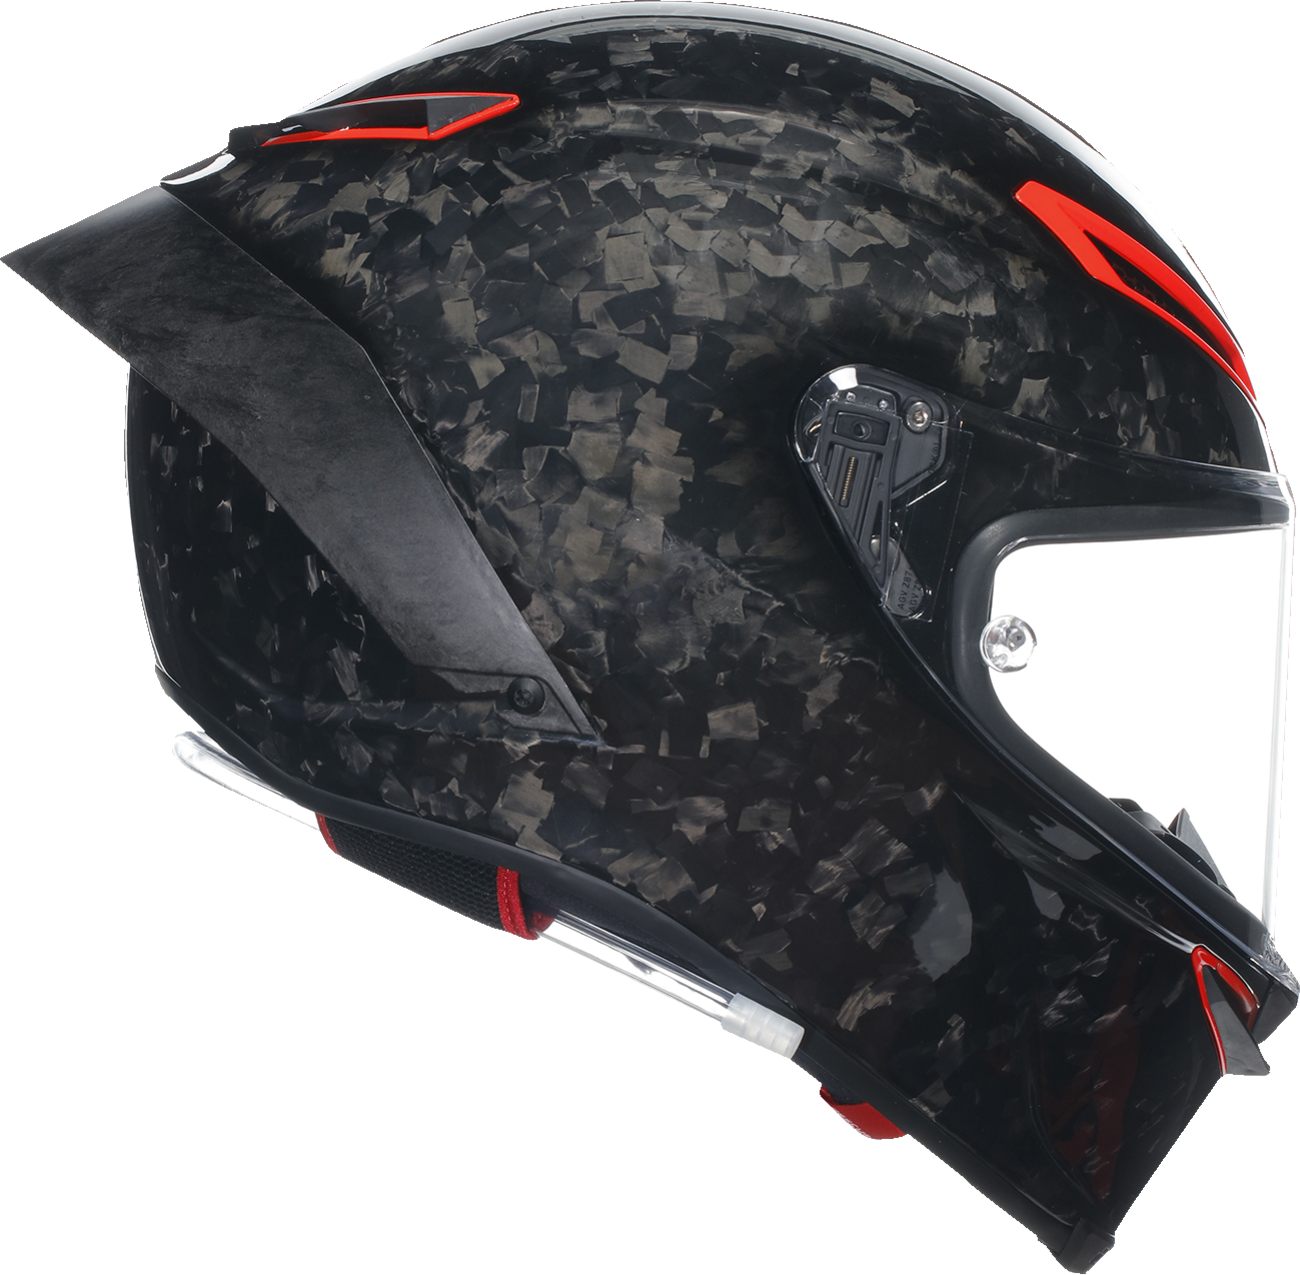 AGV Pista GP RR Helmet - Carbonio Forgiato - Italia - Large 2118356002003L